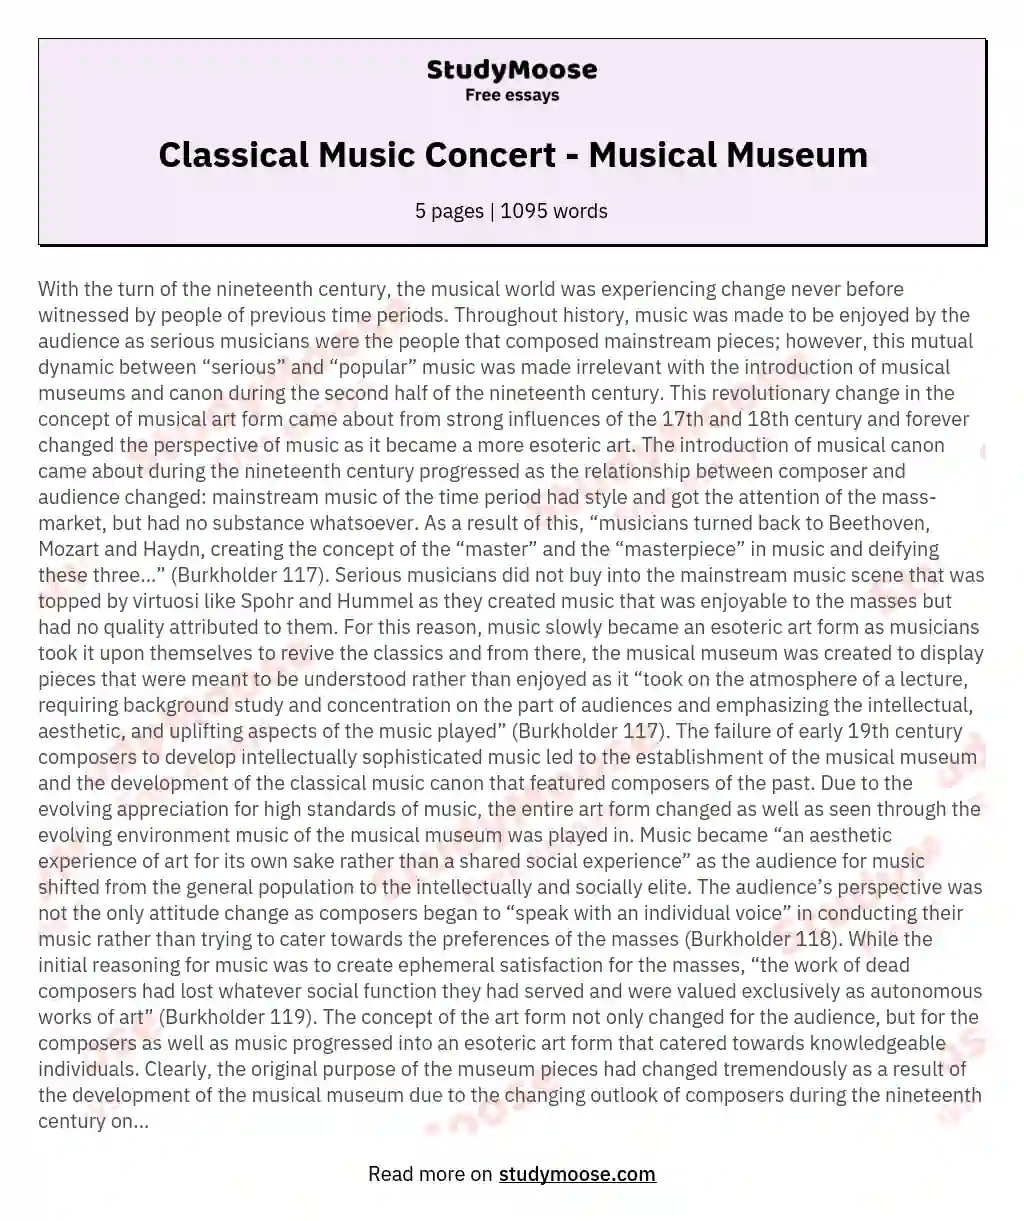 Classical Music Concert - Musical Museum essay